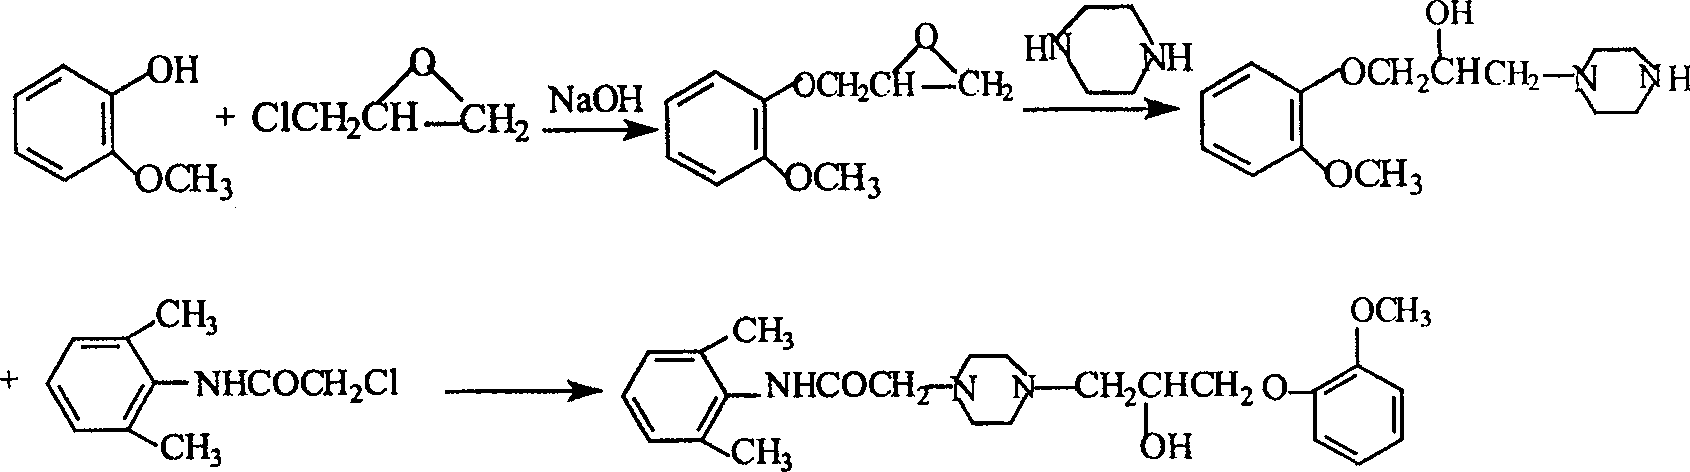 Method for synthesizing Ranolazine